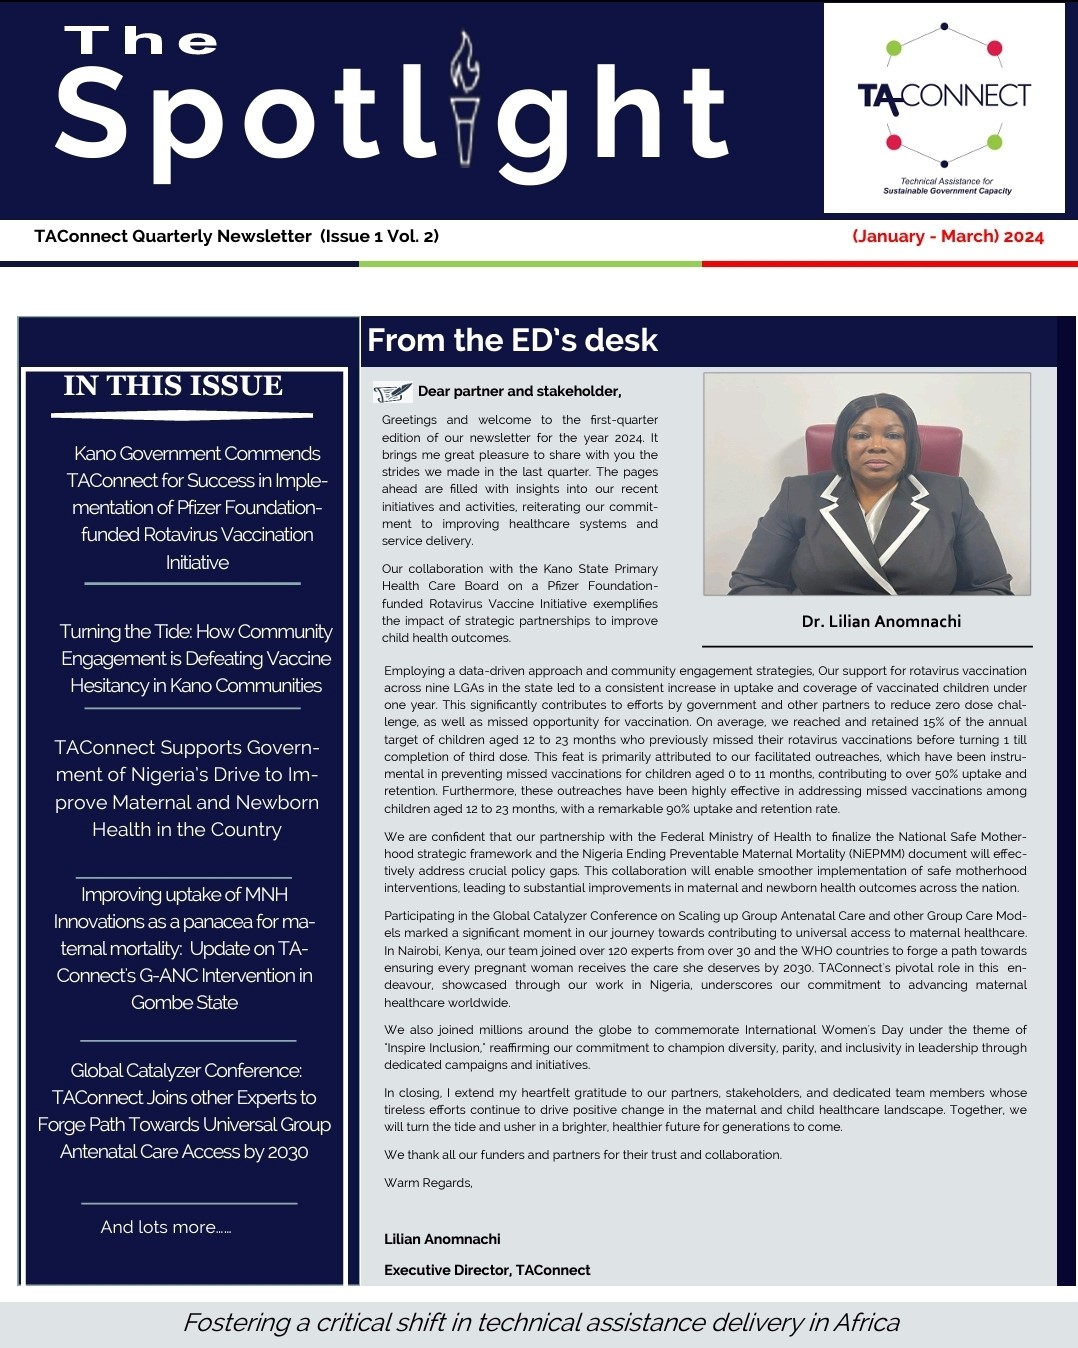 The Spotlight- TAConnect’s quarterly newsletter for Q1 2024